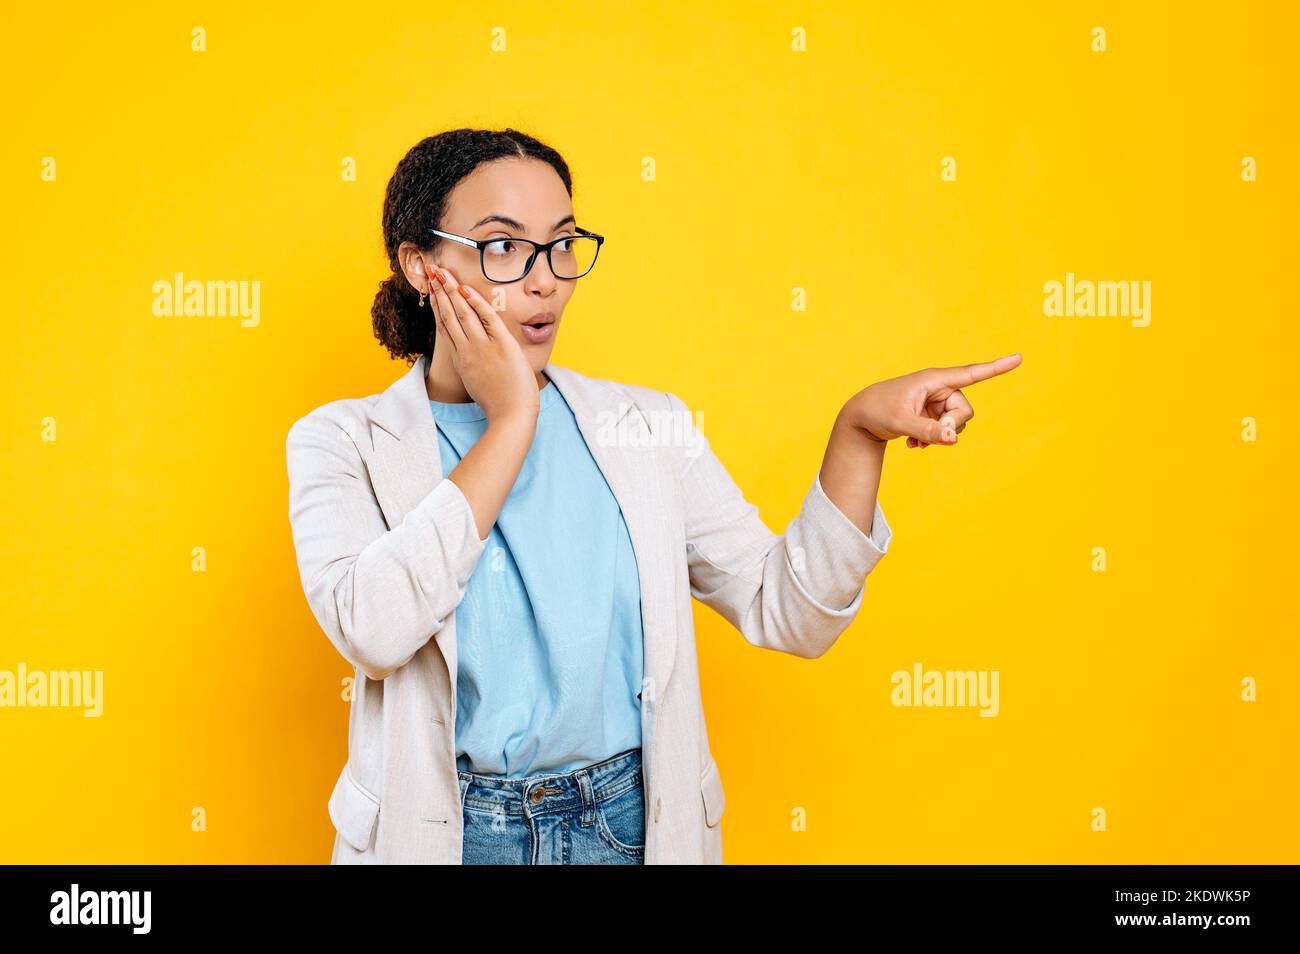 Überrascht aufgeregt junge Mixed-Race-Frau mit Brille, in eleganter Kleidung, sieht und zeigt mit ihrem Zeigefinger auf den leeren Raum für Ihre Werbung, Präsentation, isolierten orangen Hintergrund Stockfoto